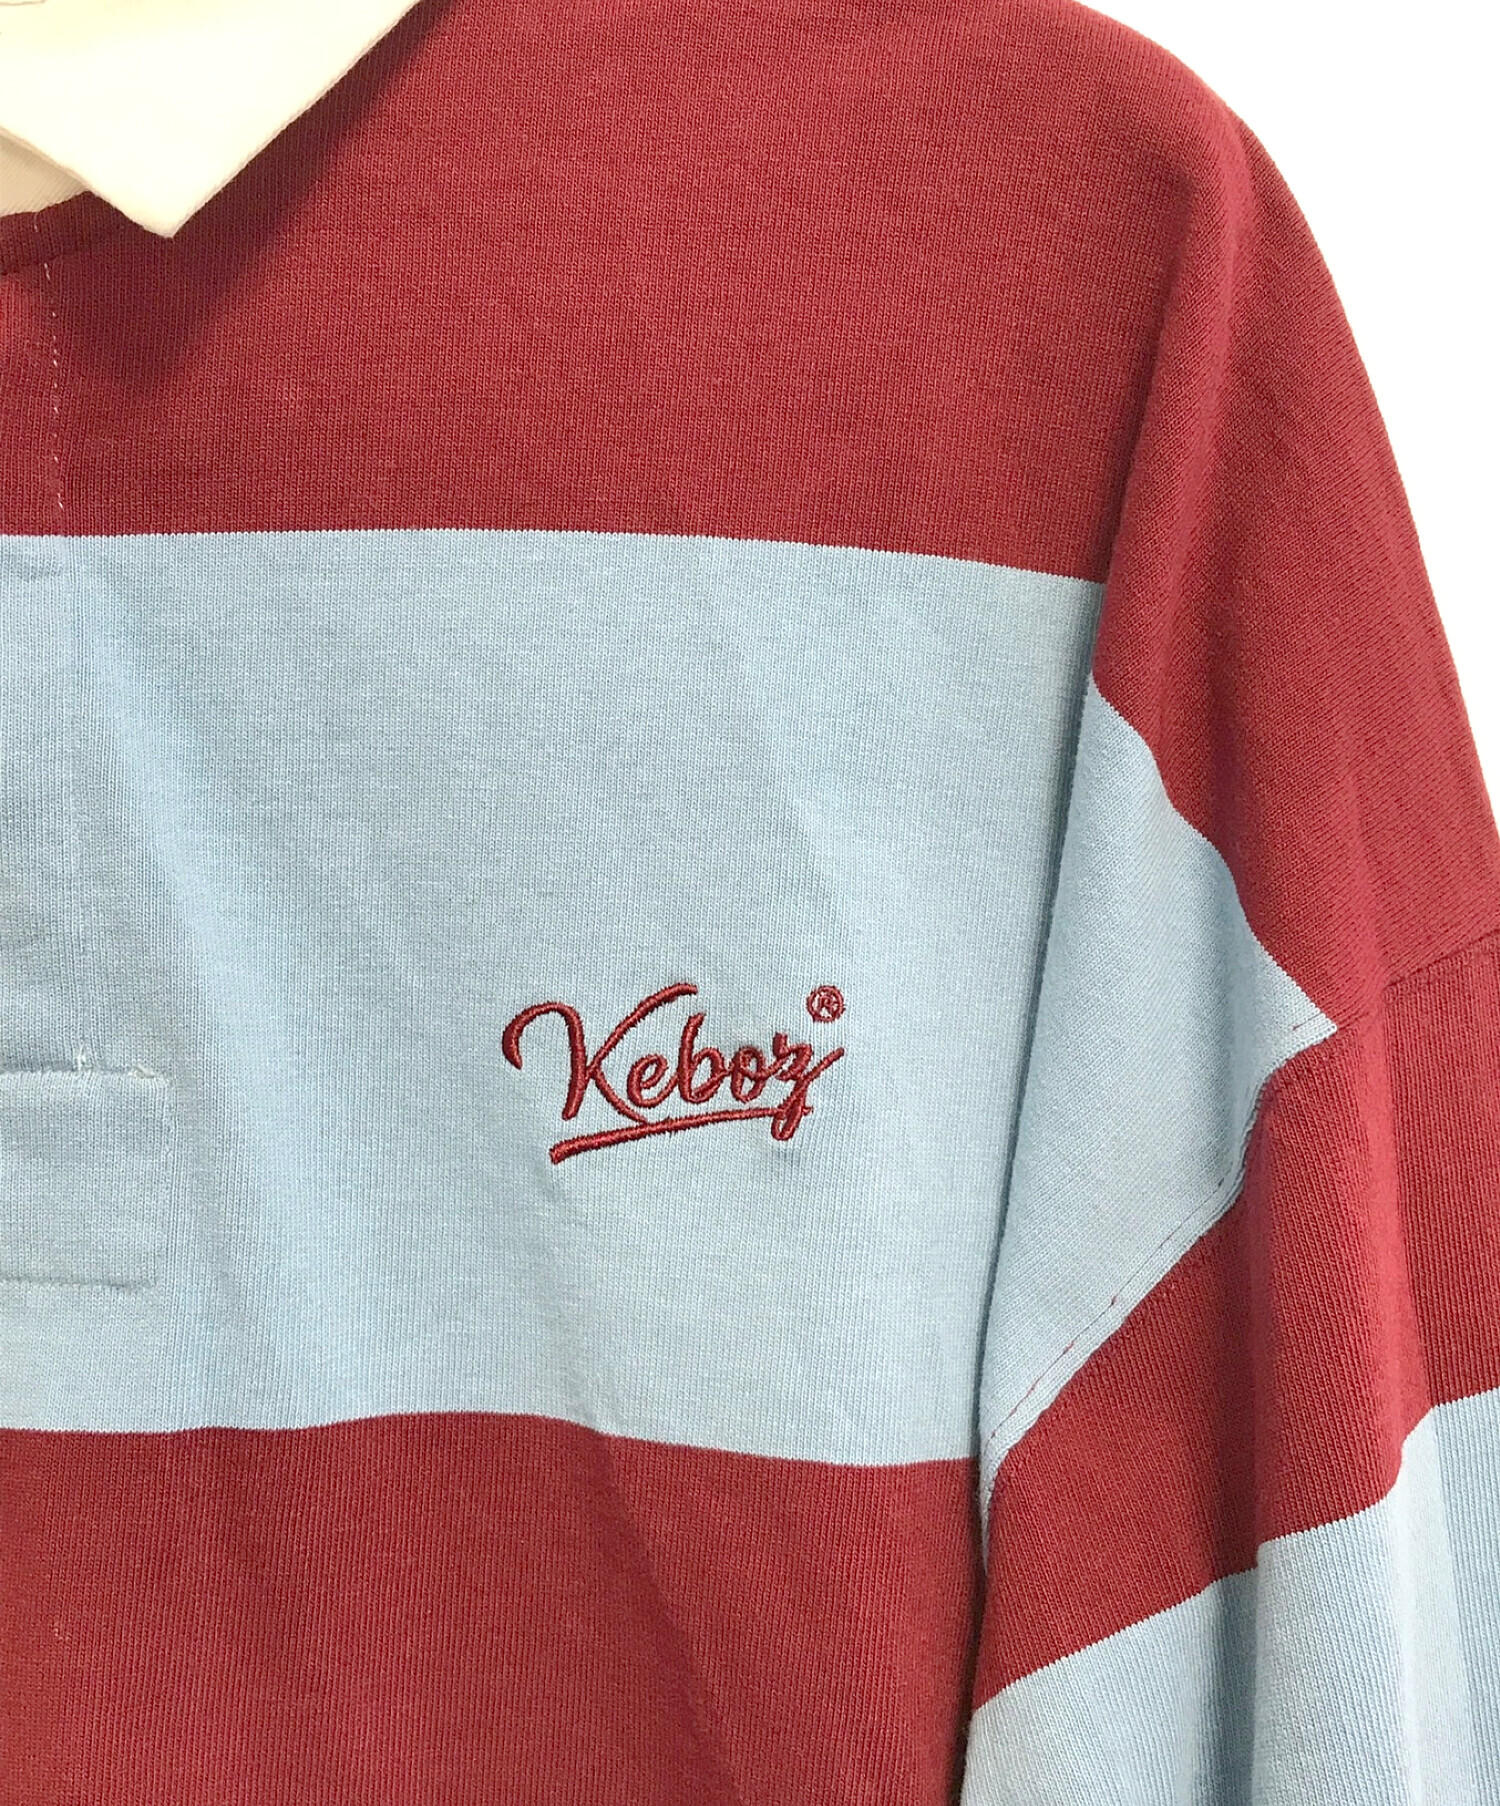 KEBOZ (ケボズ) ラガーシャツ ブルー サイズ:XXL